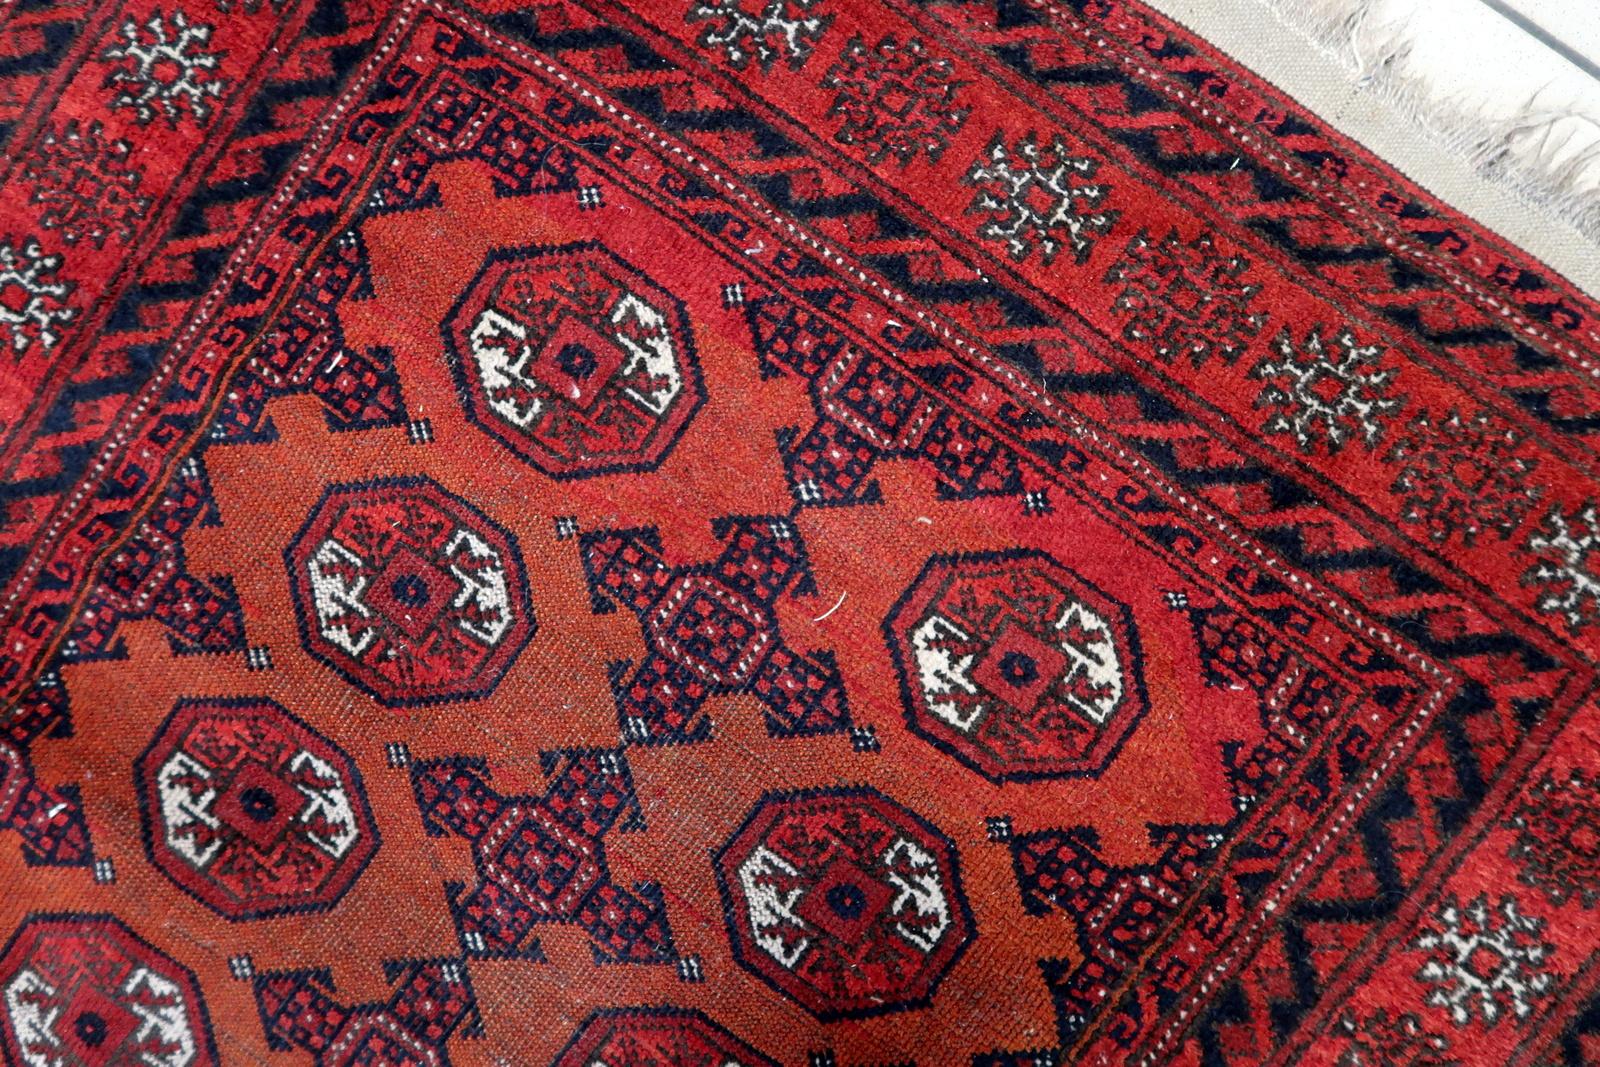 Handgefertigter antiker afghanischer Belutschen-Teppich:

Design und Ästhetik:
Dieser aus den 1920er Jahren stammende Teppich hat eine reiche Geschichte und ist zeitlos schön.
Mit den Maßen 118 cm x 149 cm (ca. 3,8' x 4,8') ist es ein kompaktes und